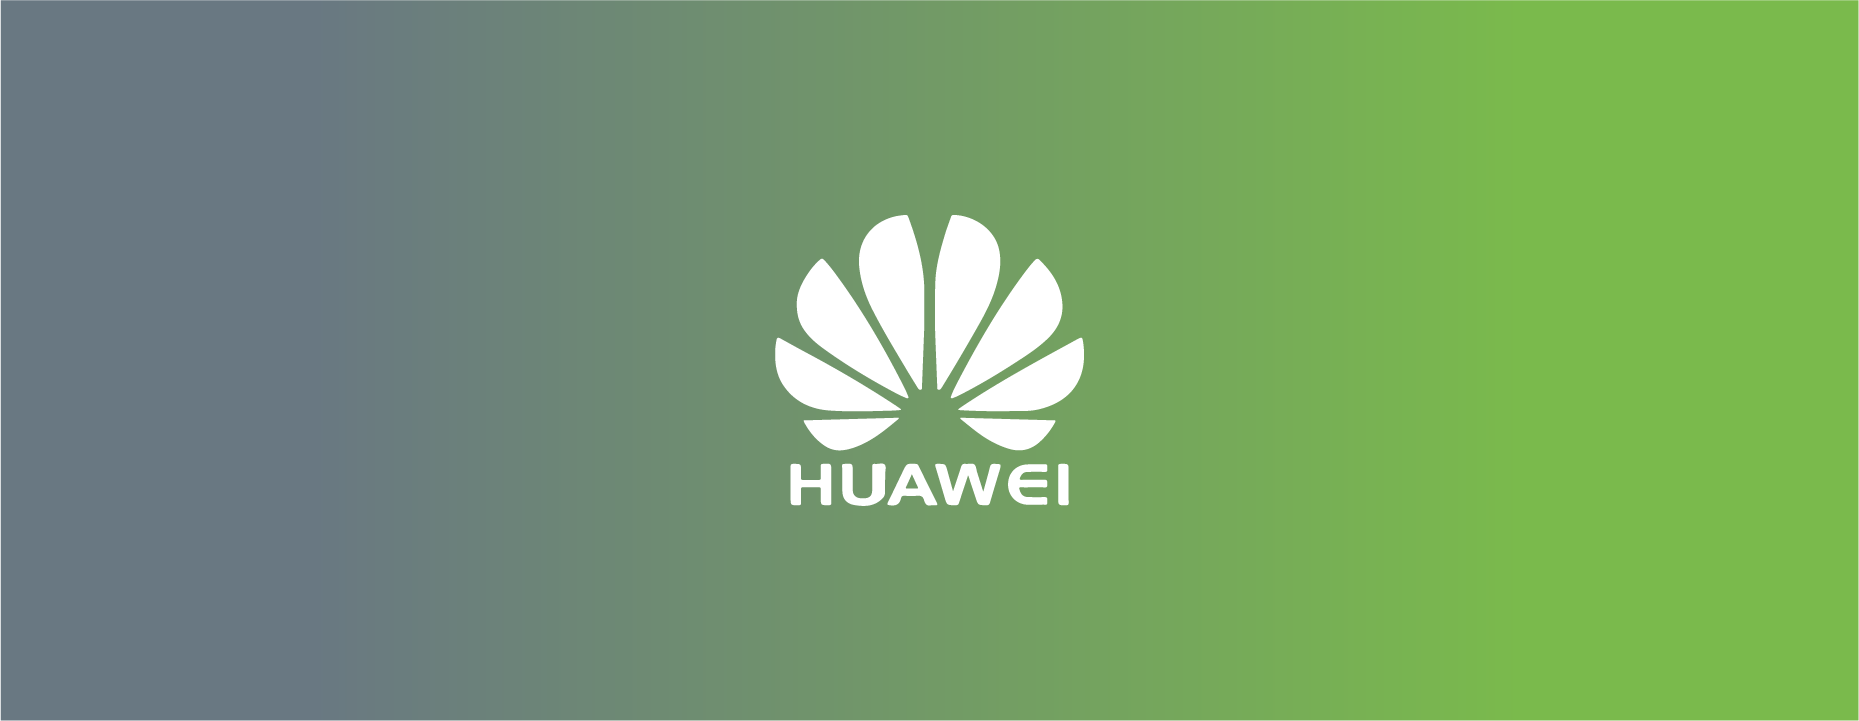 huawei-banner-brand-logo